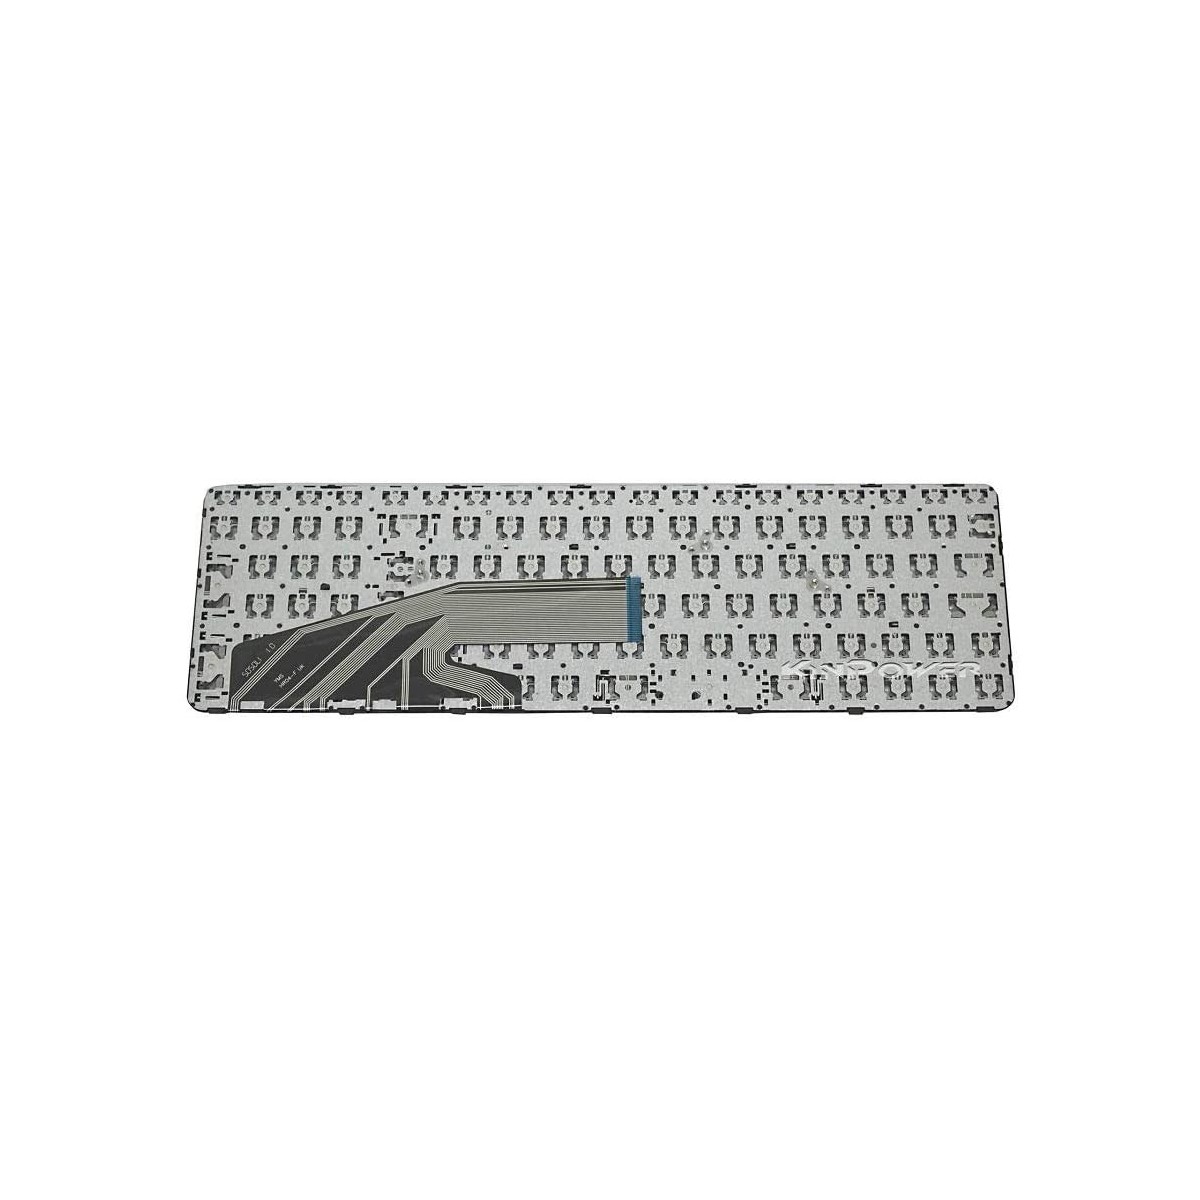 Clavier Français compatible Pour HP ProBook 455 G4 SERIES SG-80760-XBA